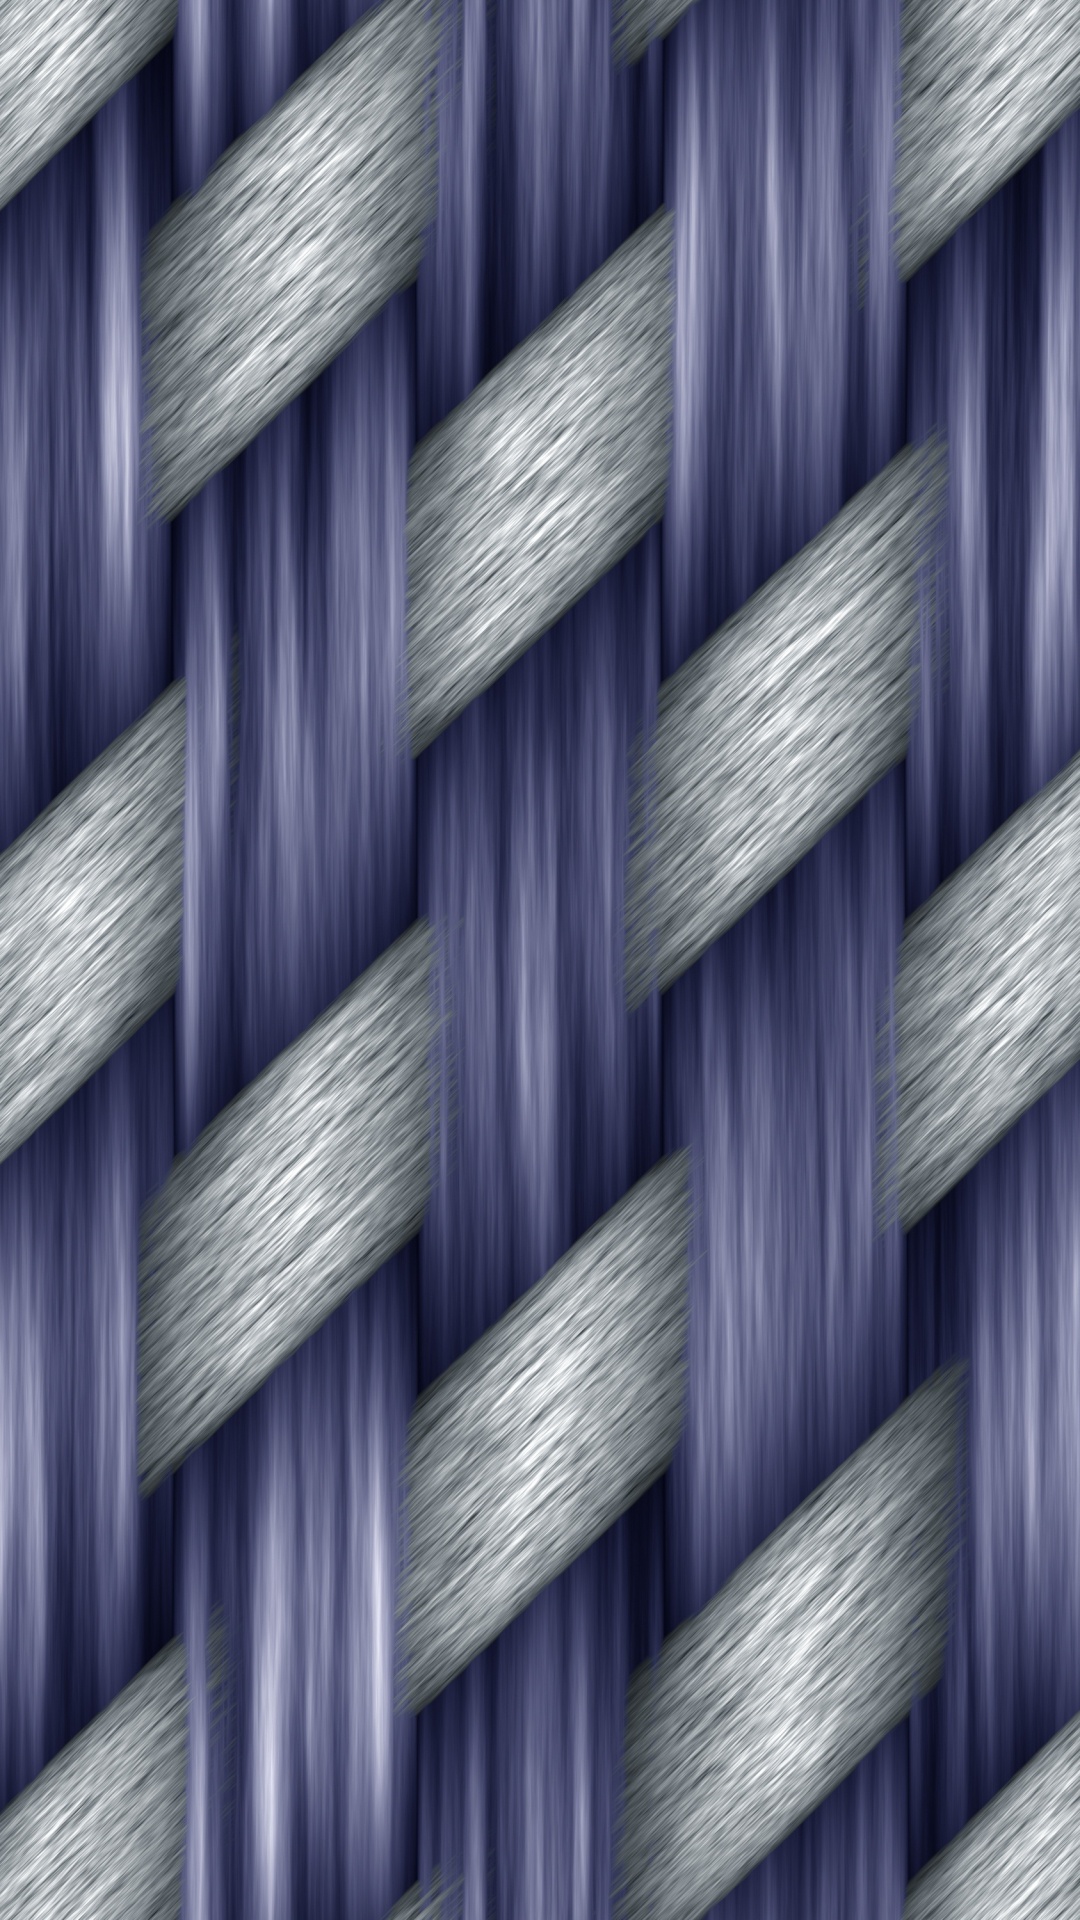 Panel de Vidrio Azul y Blanco. Wallpaper in 1080x1920 Resolution